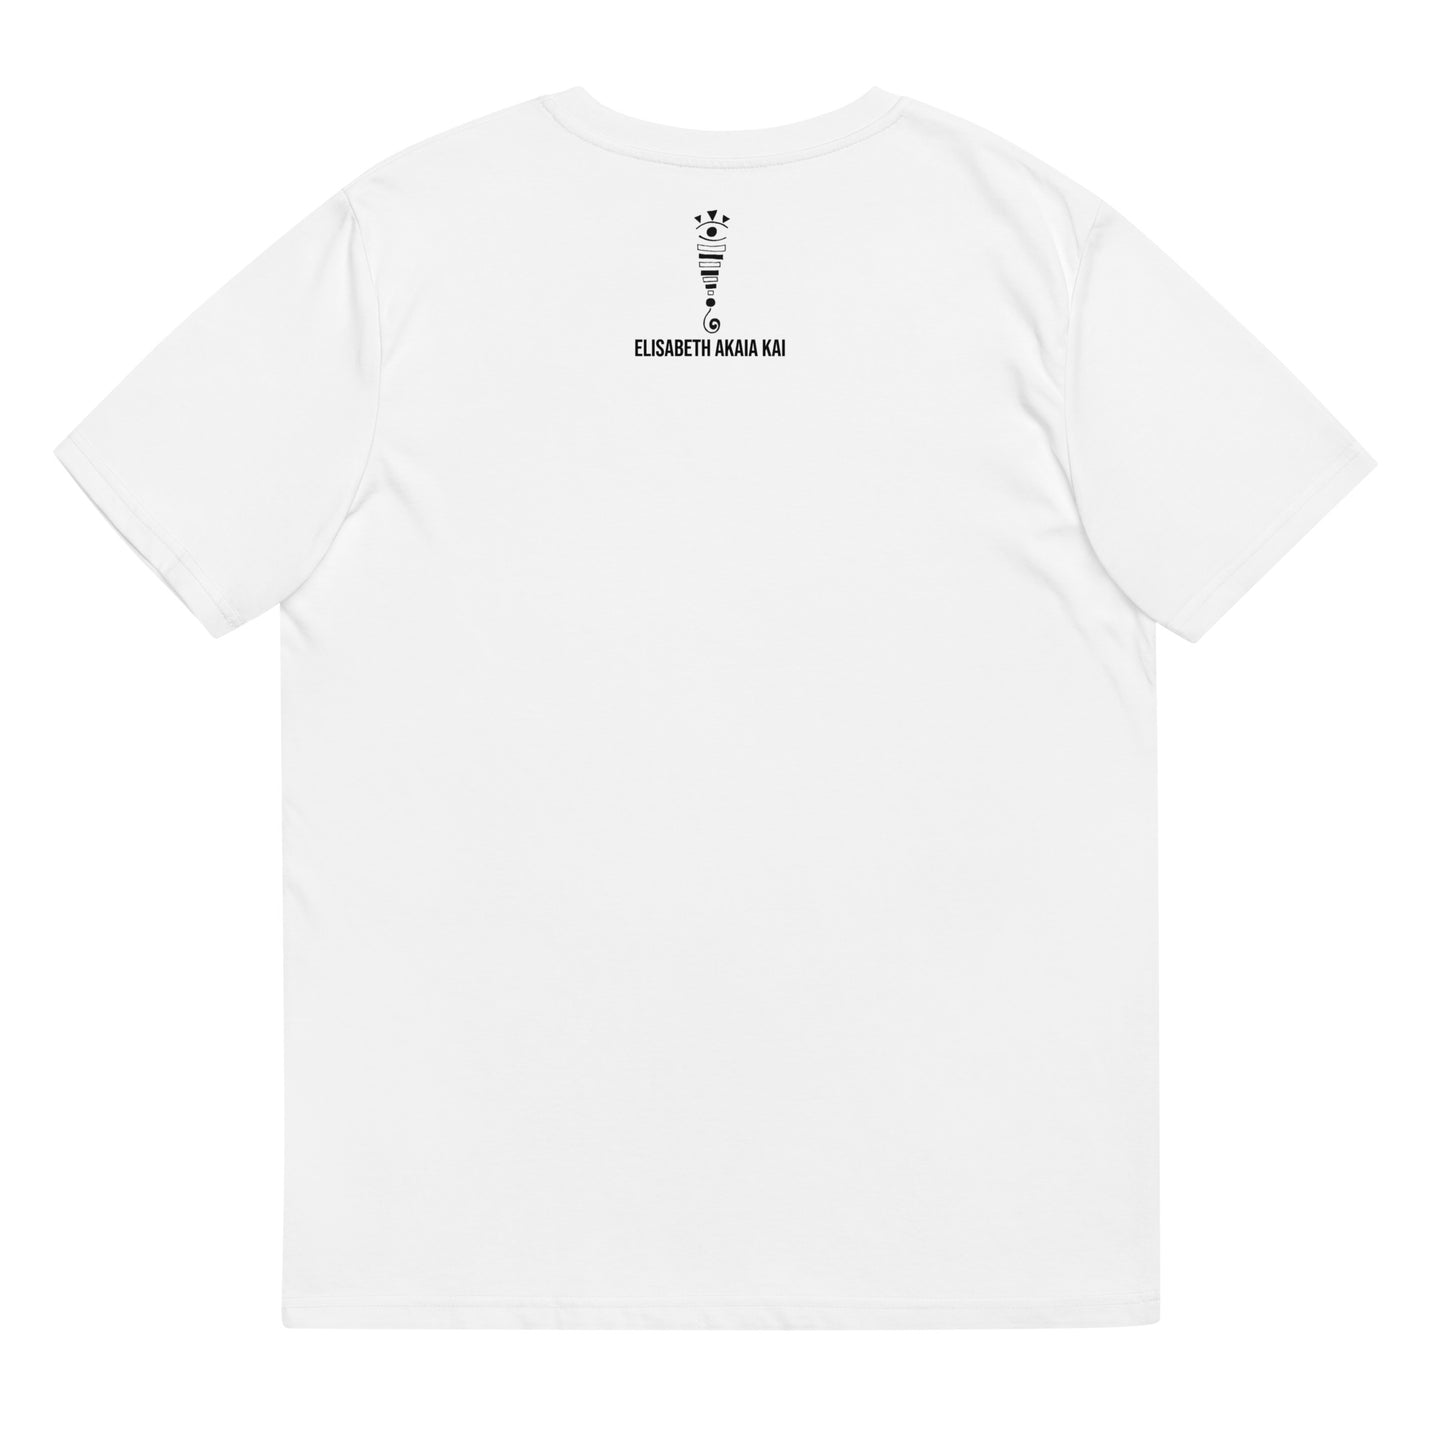 LA FEMME AUX TRAINS - T-shirt unisexe en coton biologique